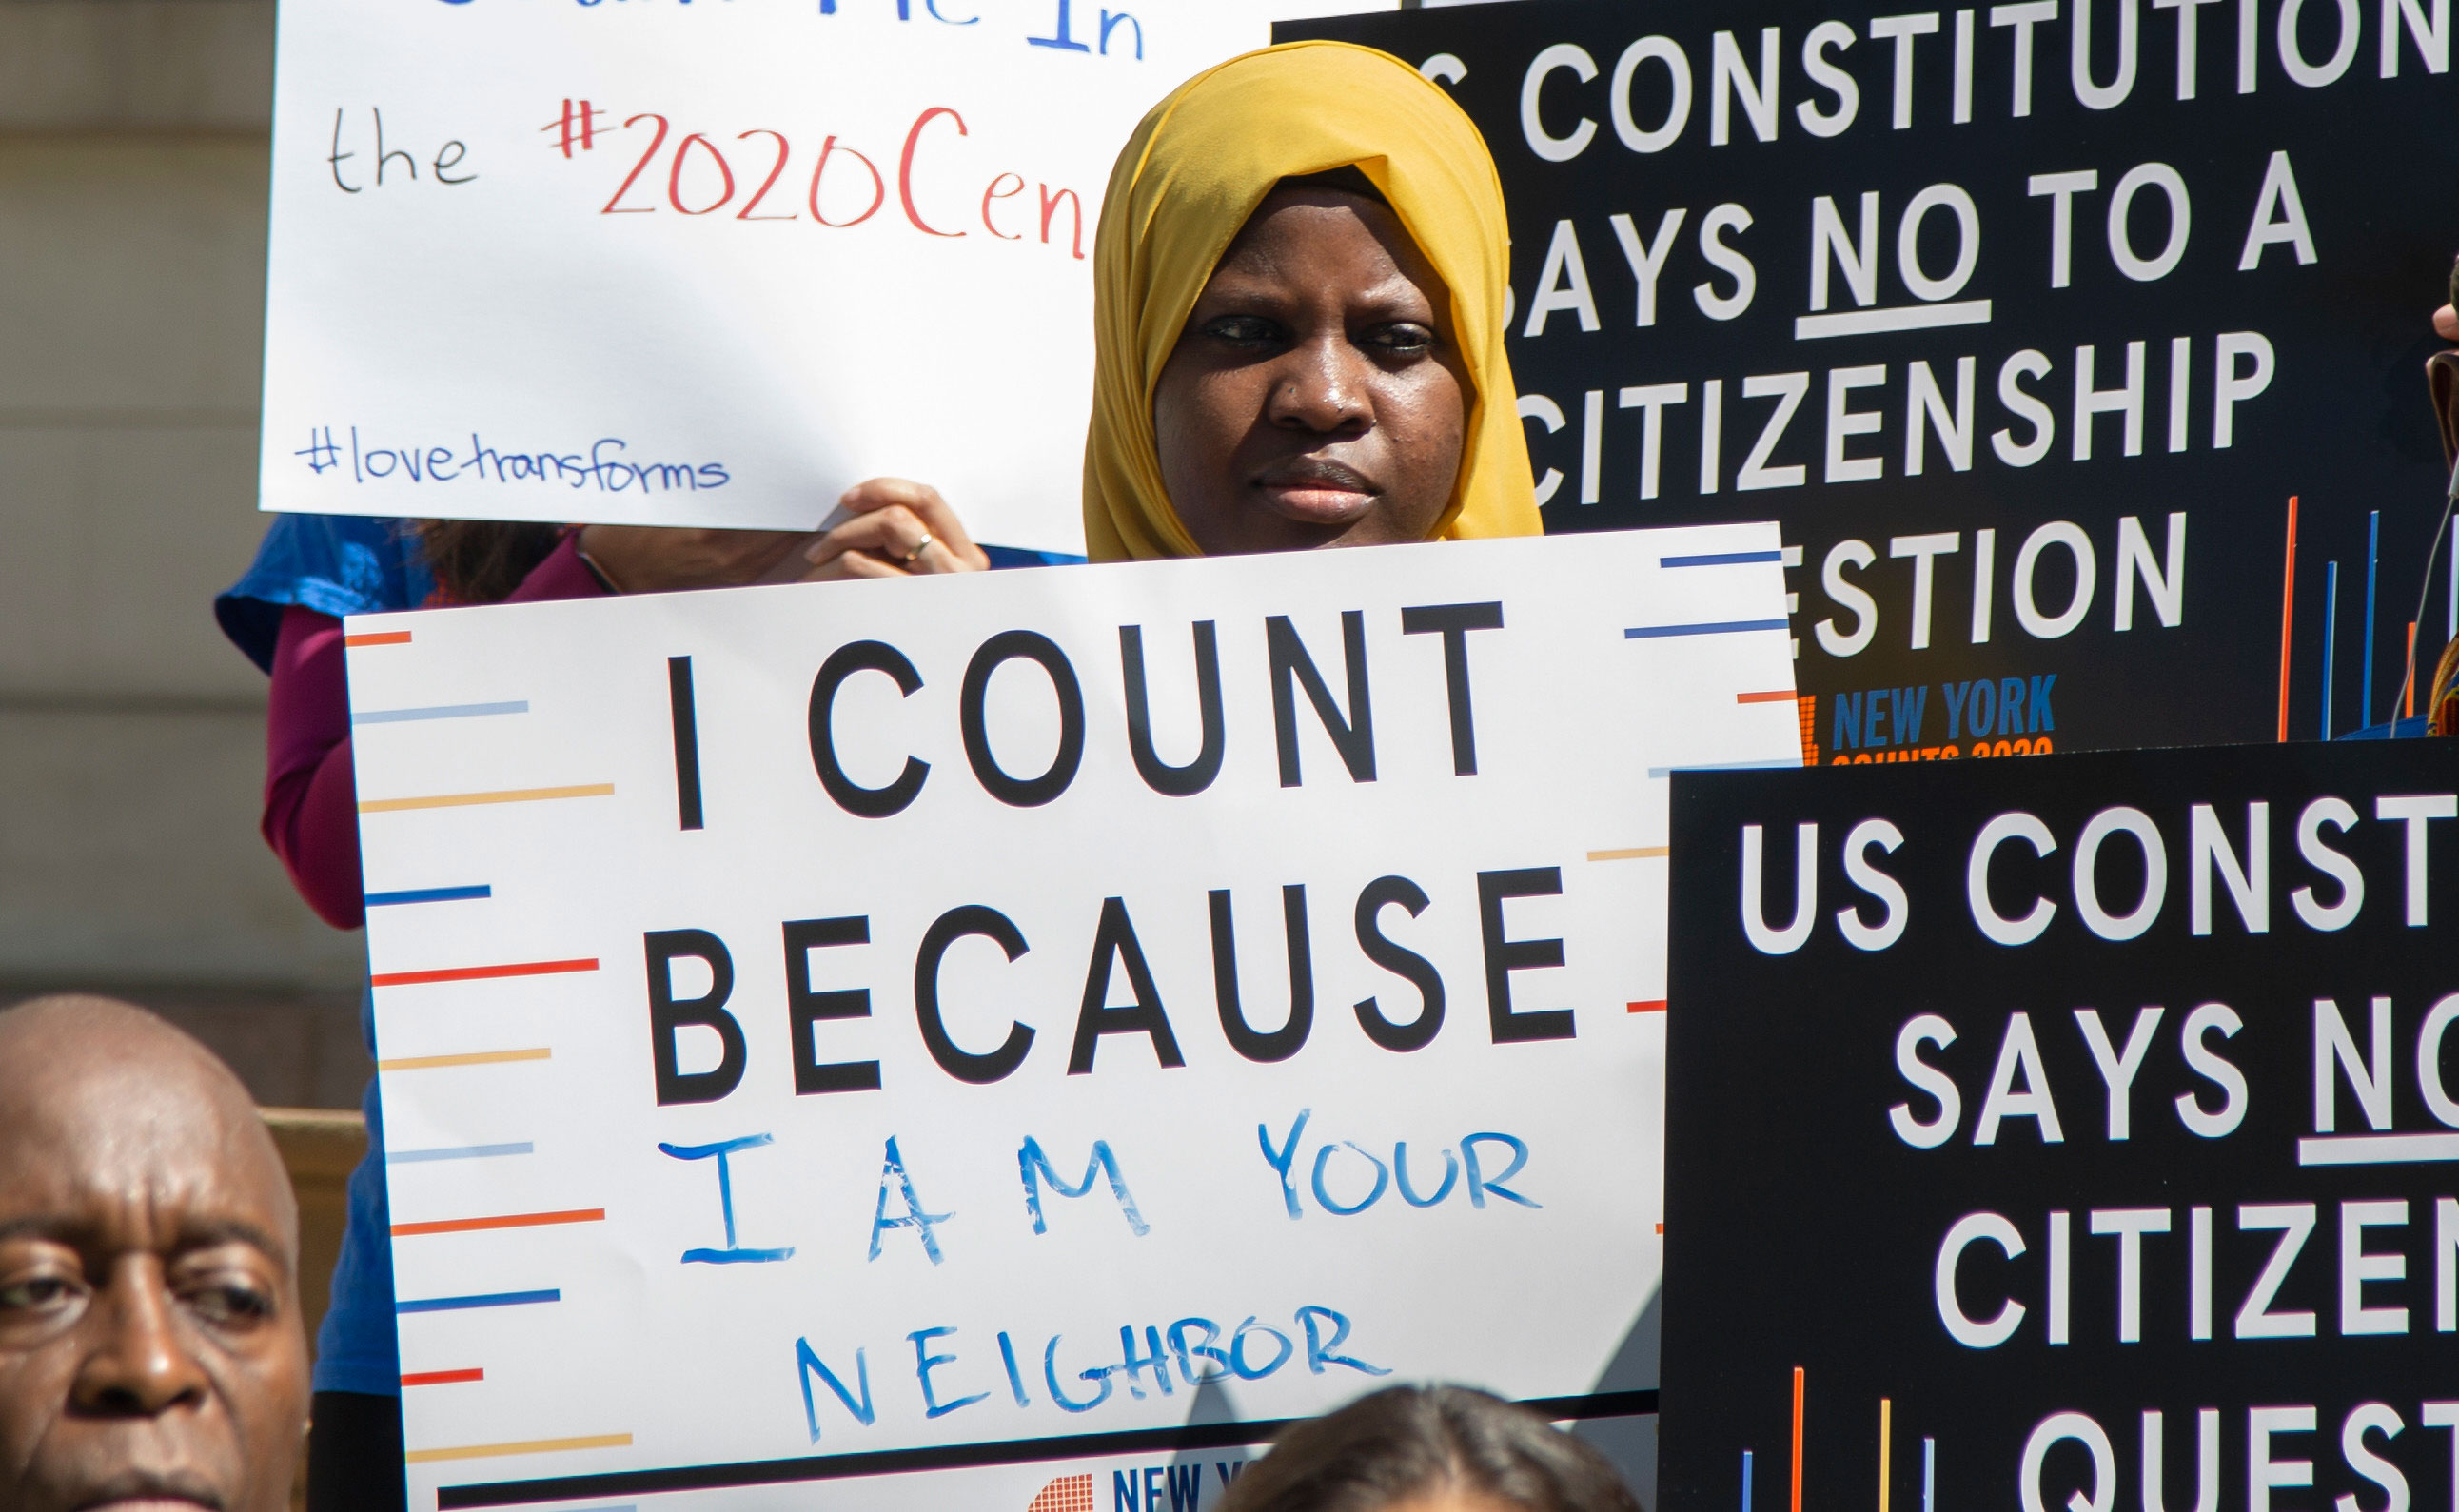 La imagen muestra a un joven en una conferencia de prensa del Consejo de la Ciudad de Nueva York con un cartel que decía "Cuento porque soy tu vecino".